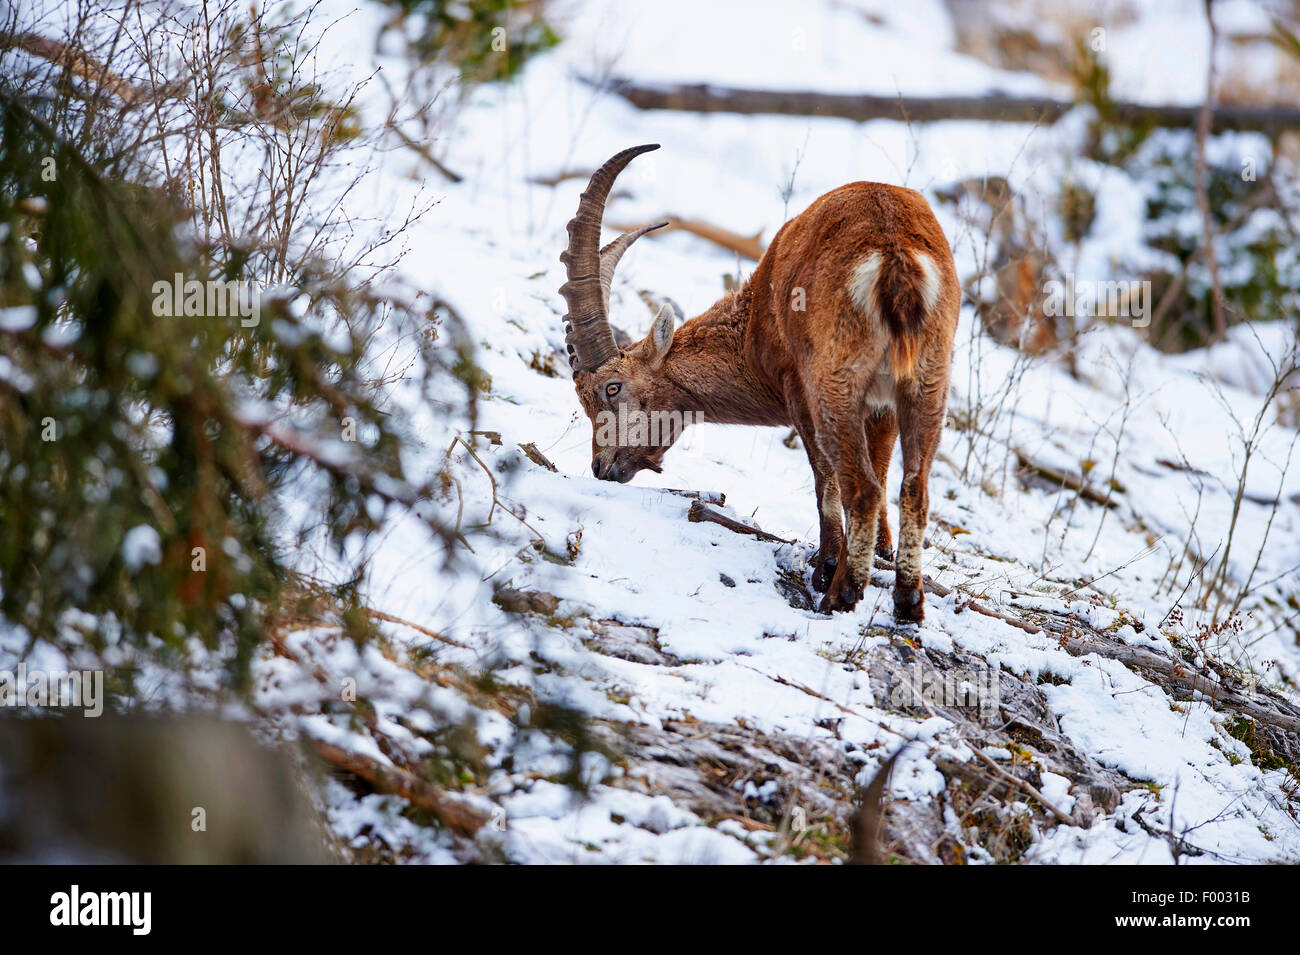 Alpine ibex (Capra ibex, Capra ibex ibex), on the feed in snow, Austria, Styria Stock Photo